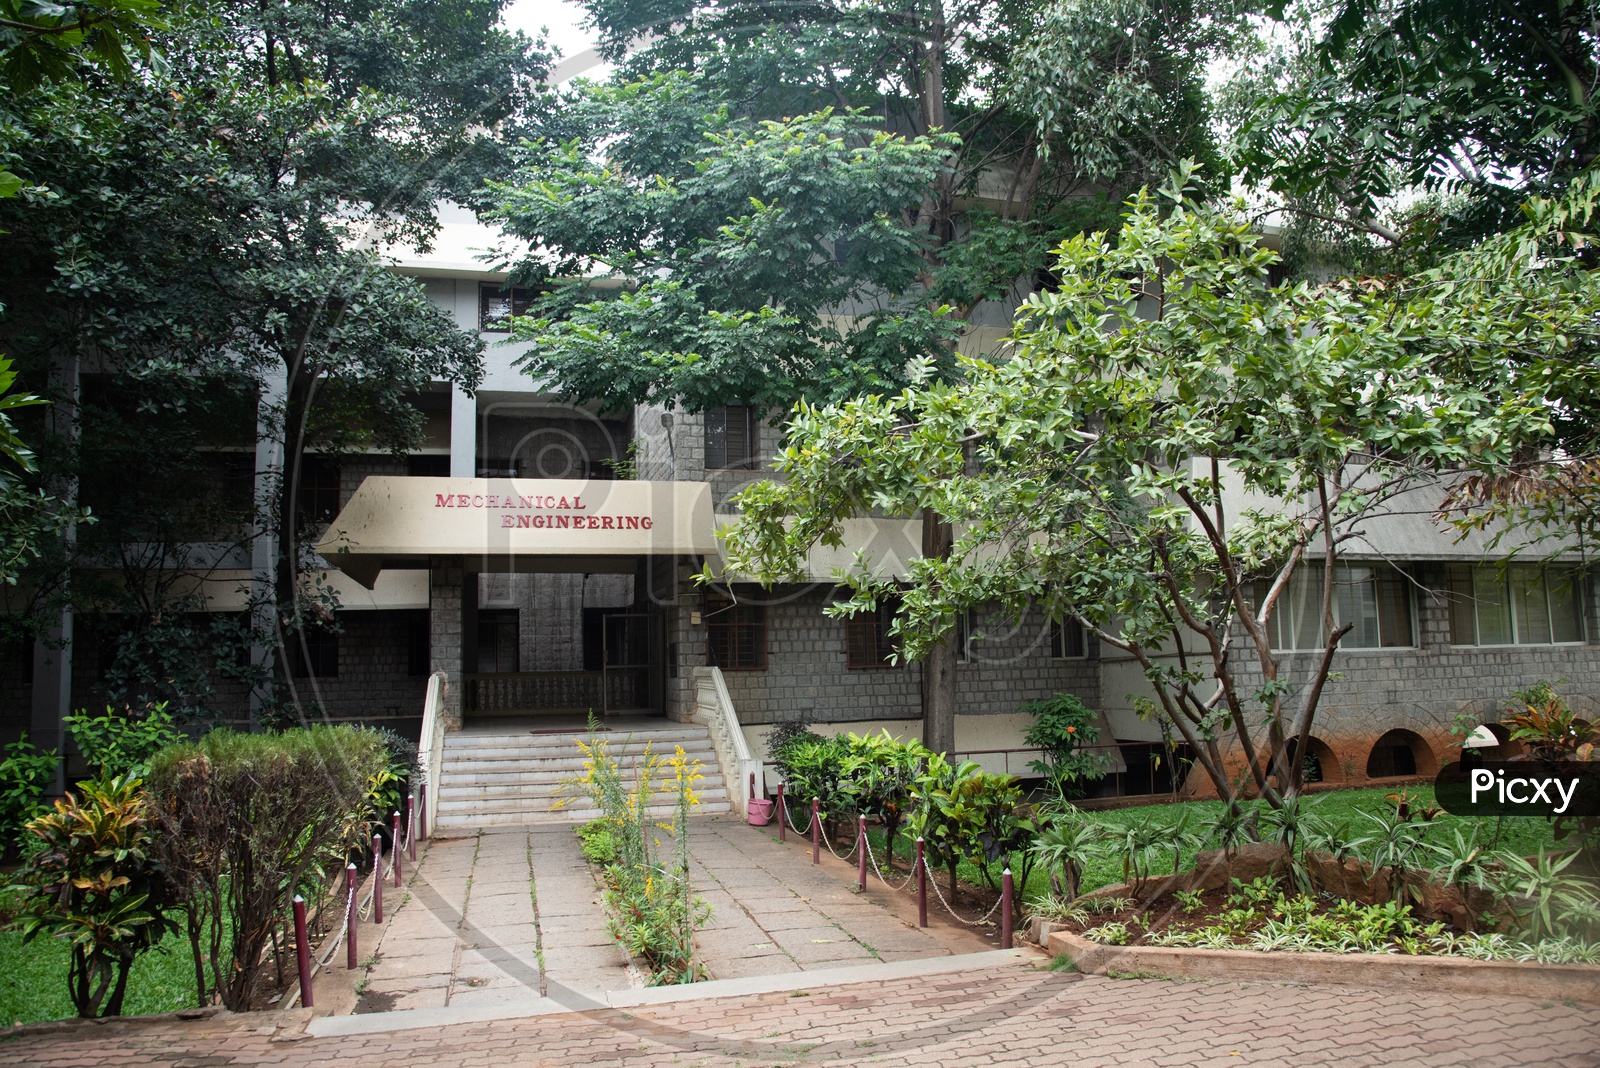 Mechanical Engineering Department,IISC Bangalore